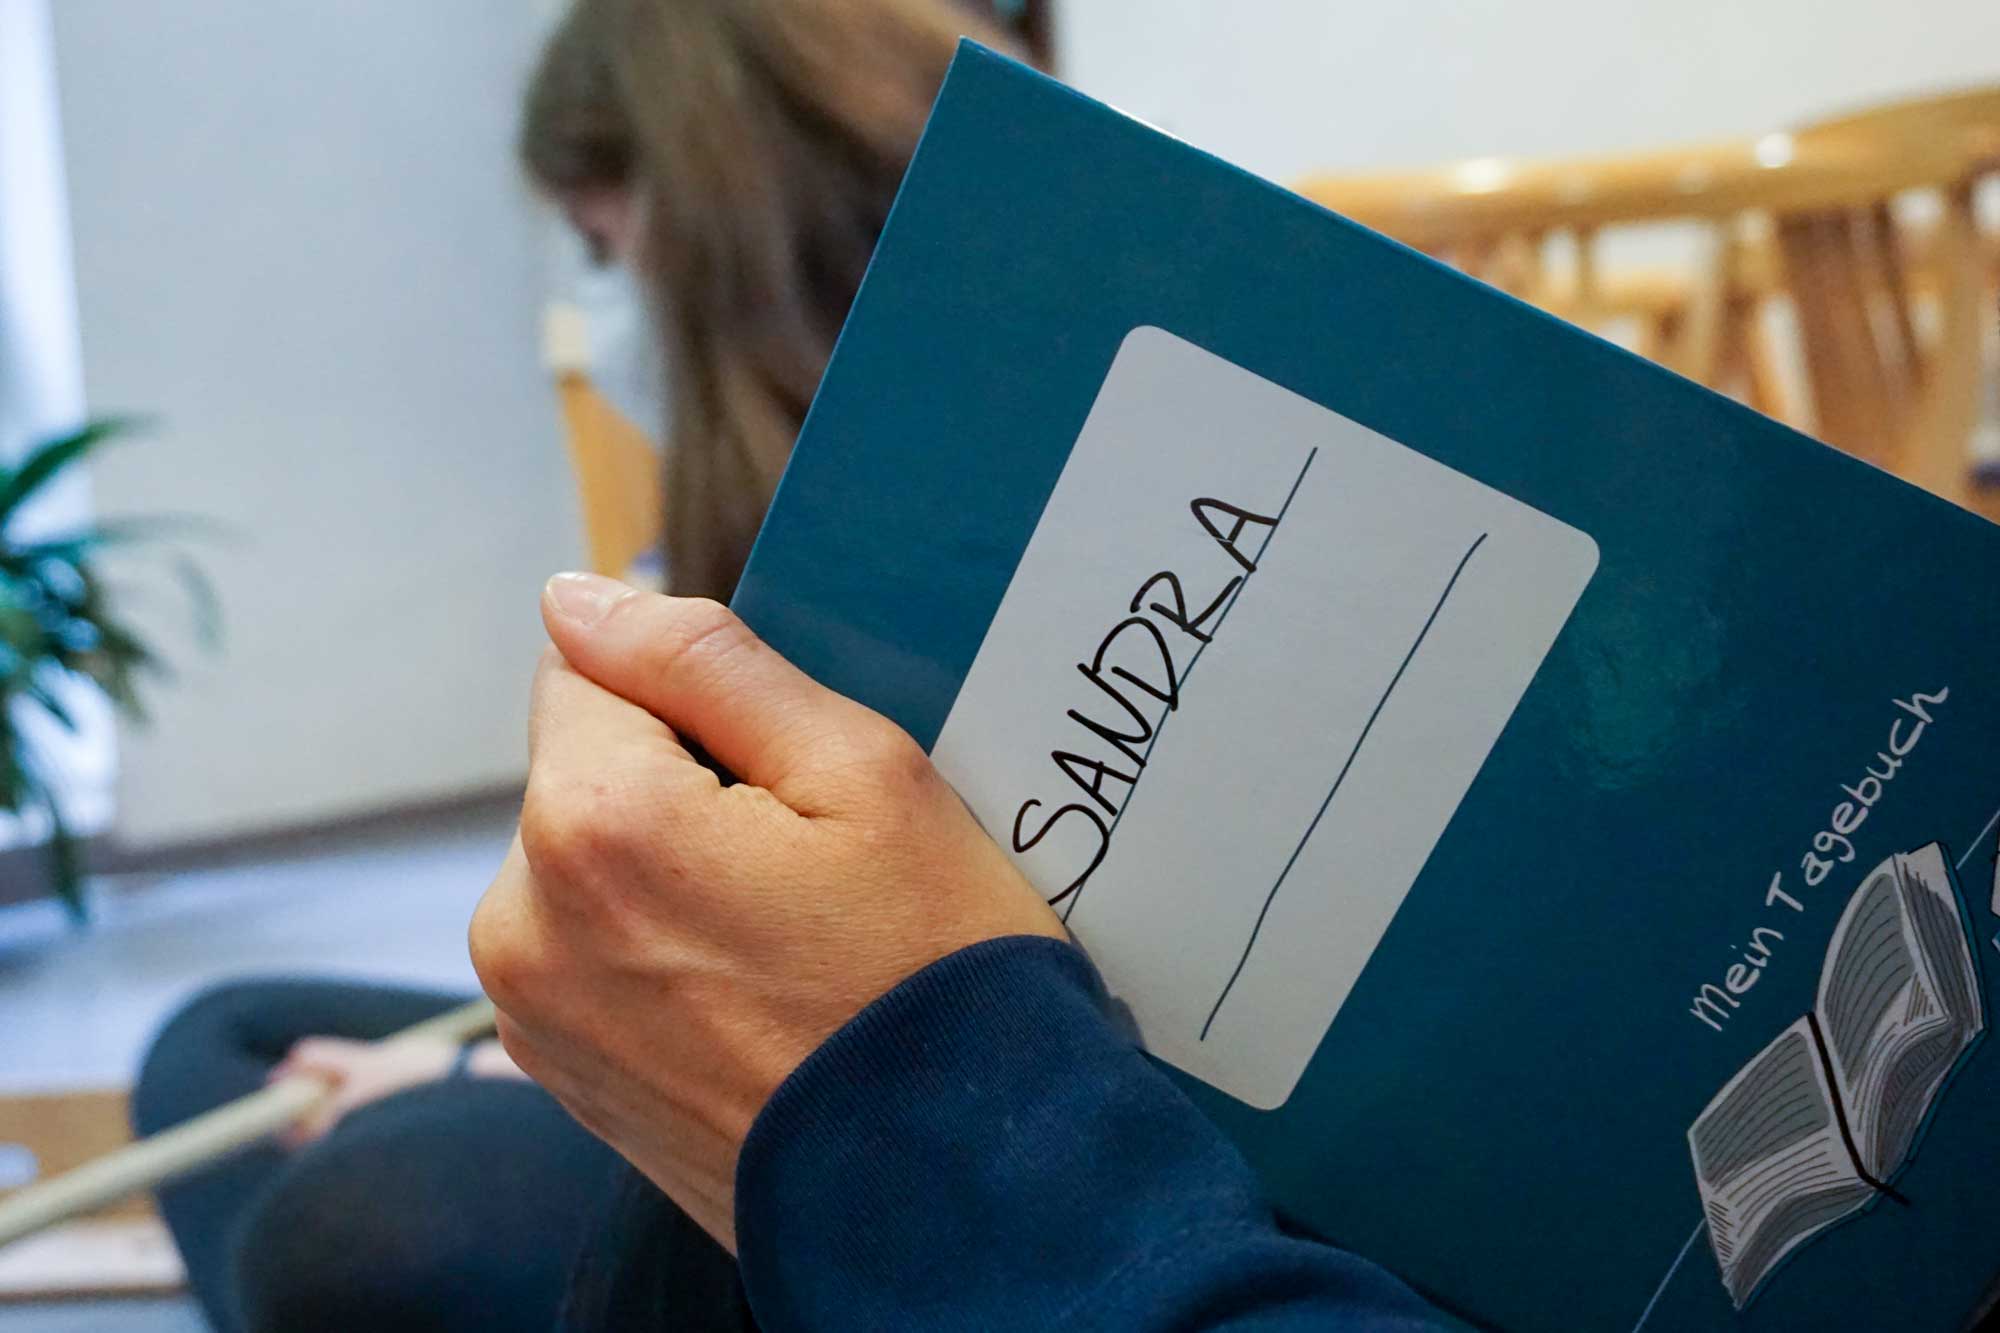 Eine Schülerin hält ihr Tagebuch, darauf steht "Sandra"